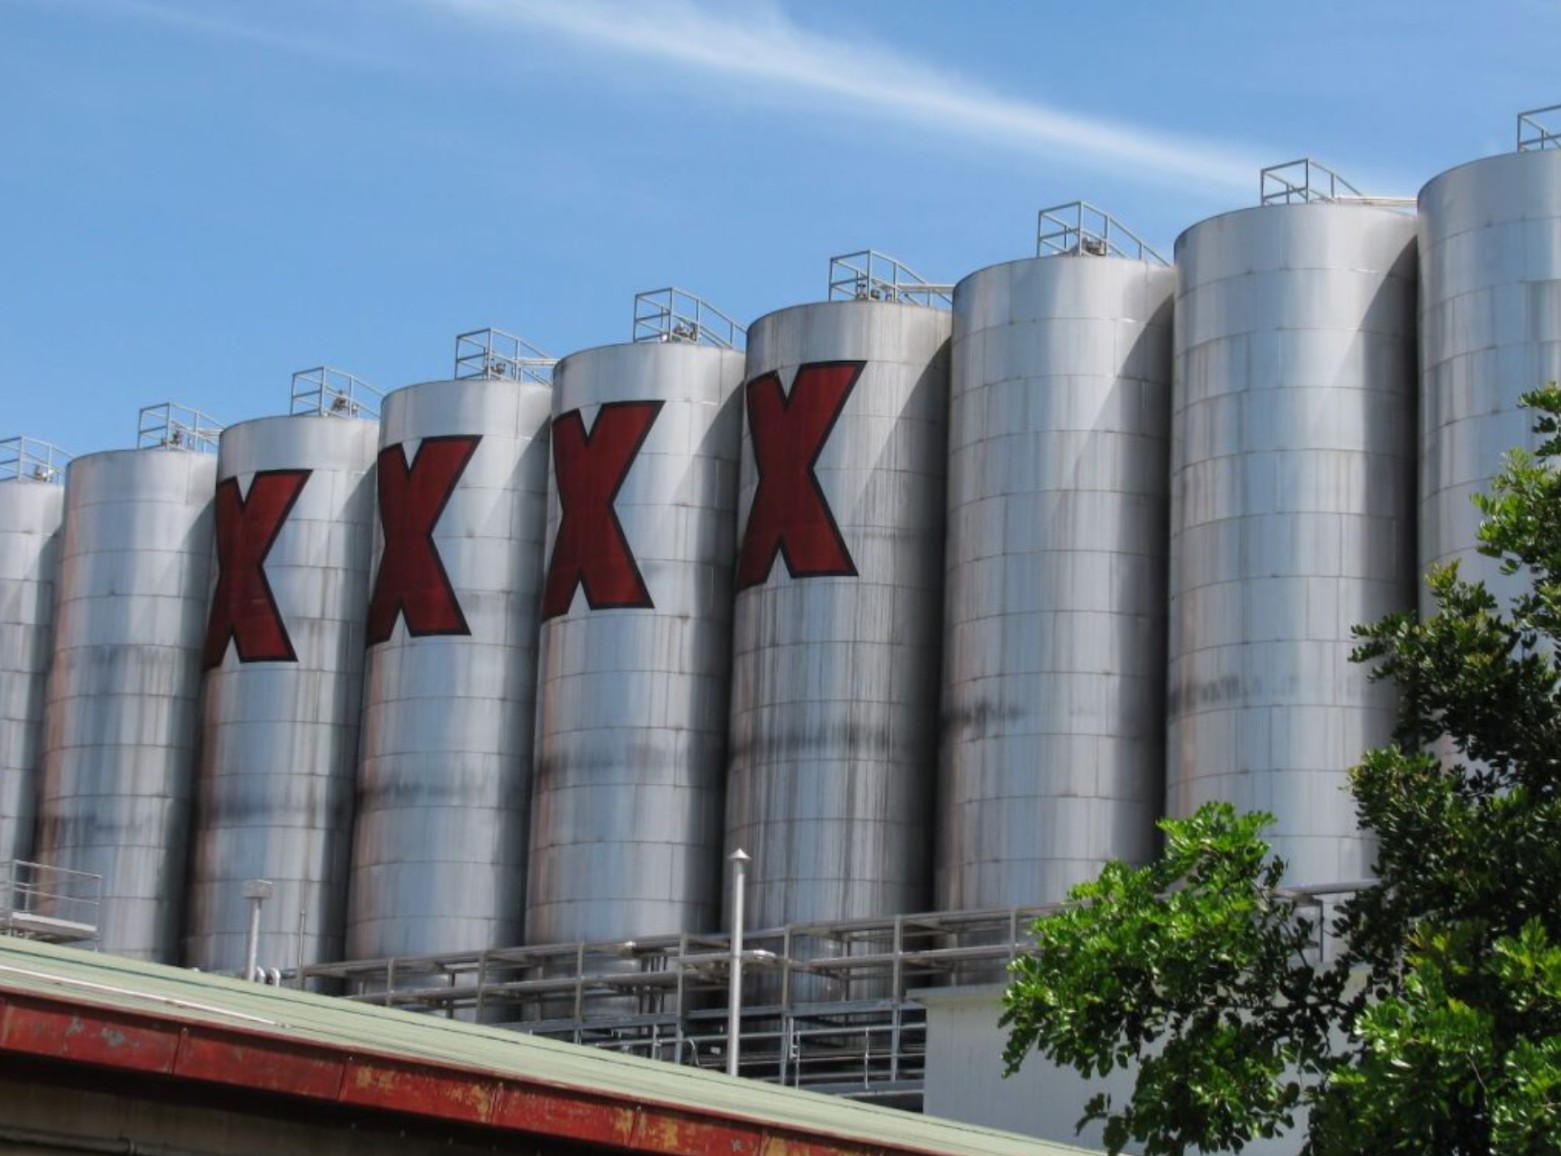 Xxxx Brewery Brisbane Video - Brisbane XXXX Brewery and Alehouse Tour in Brisbane | Pelago